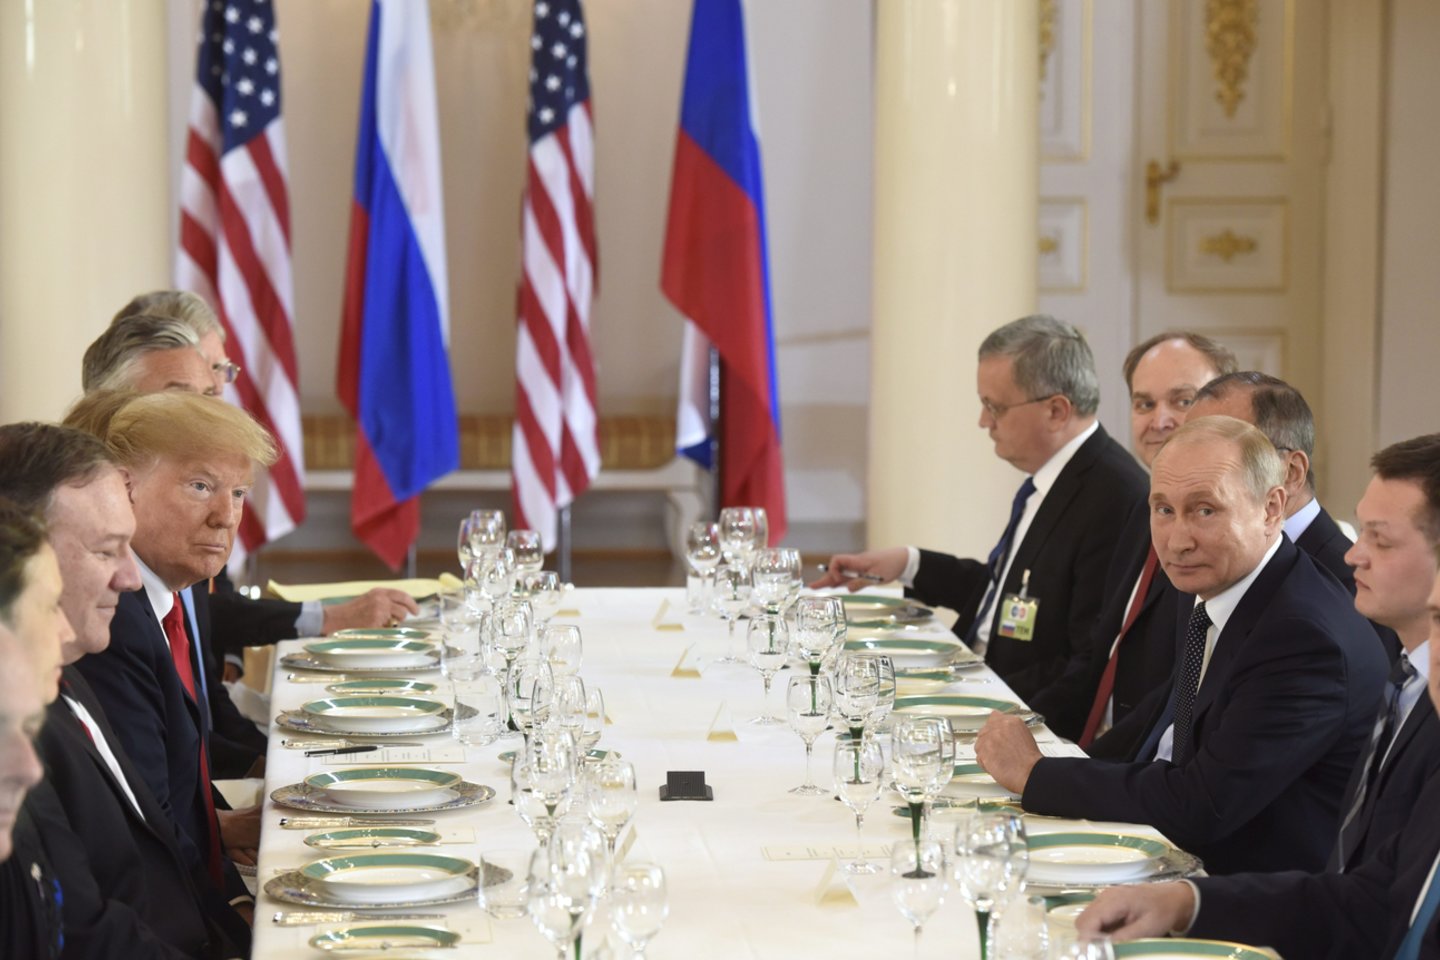 Praėjusį mėnesį įvyko JAV ir Rusijos viršūnių susitikimas. Jame Vladimiras Putinas Donaldui Trumpui pateikė ilgą sąrašą prašymų ir pasiūlymų ginklų kontrolės tema. <br>AFP/Scanpix nuotr.